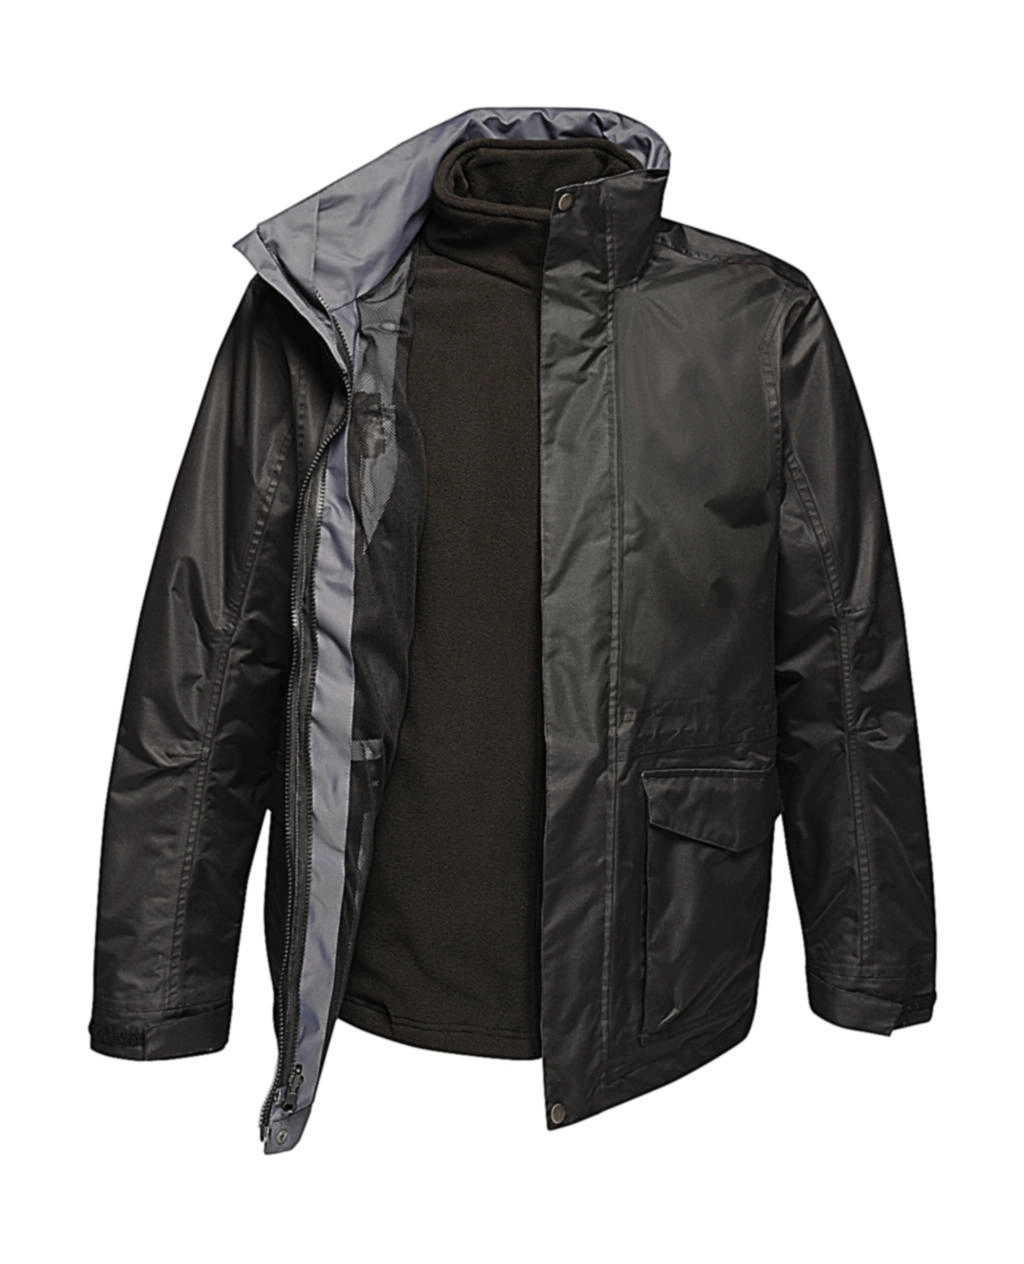 Benson III Jacket zum Besticken und Bedrucken in der Farbe Black/Black mit Ihren Logo, Schriftzug oder Motiv.